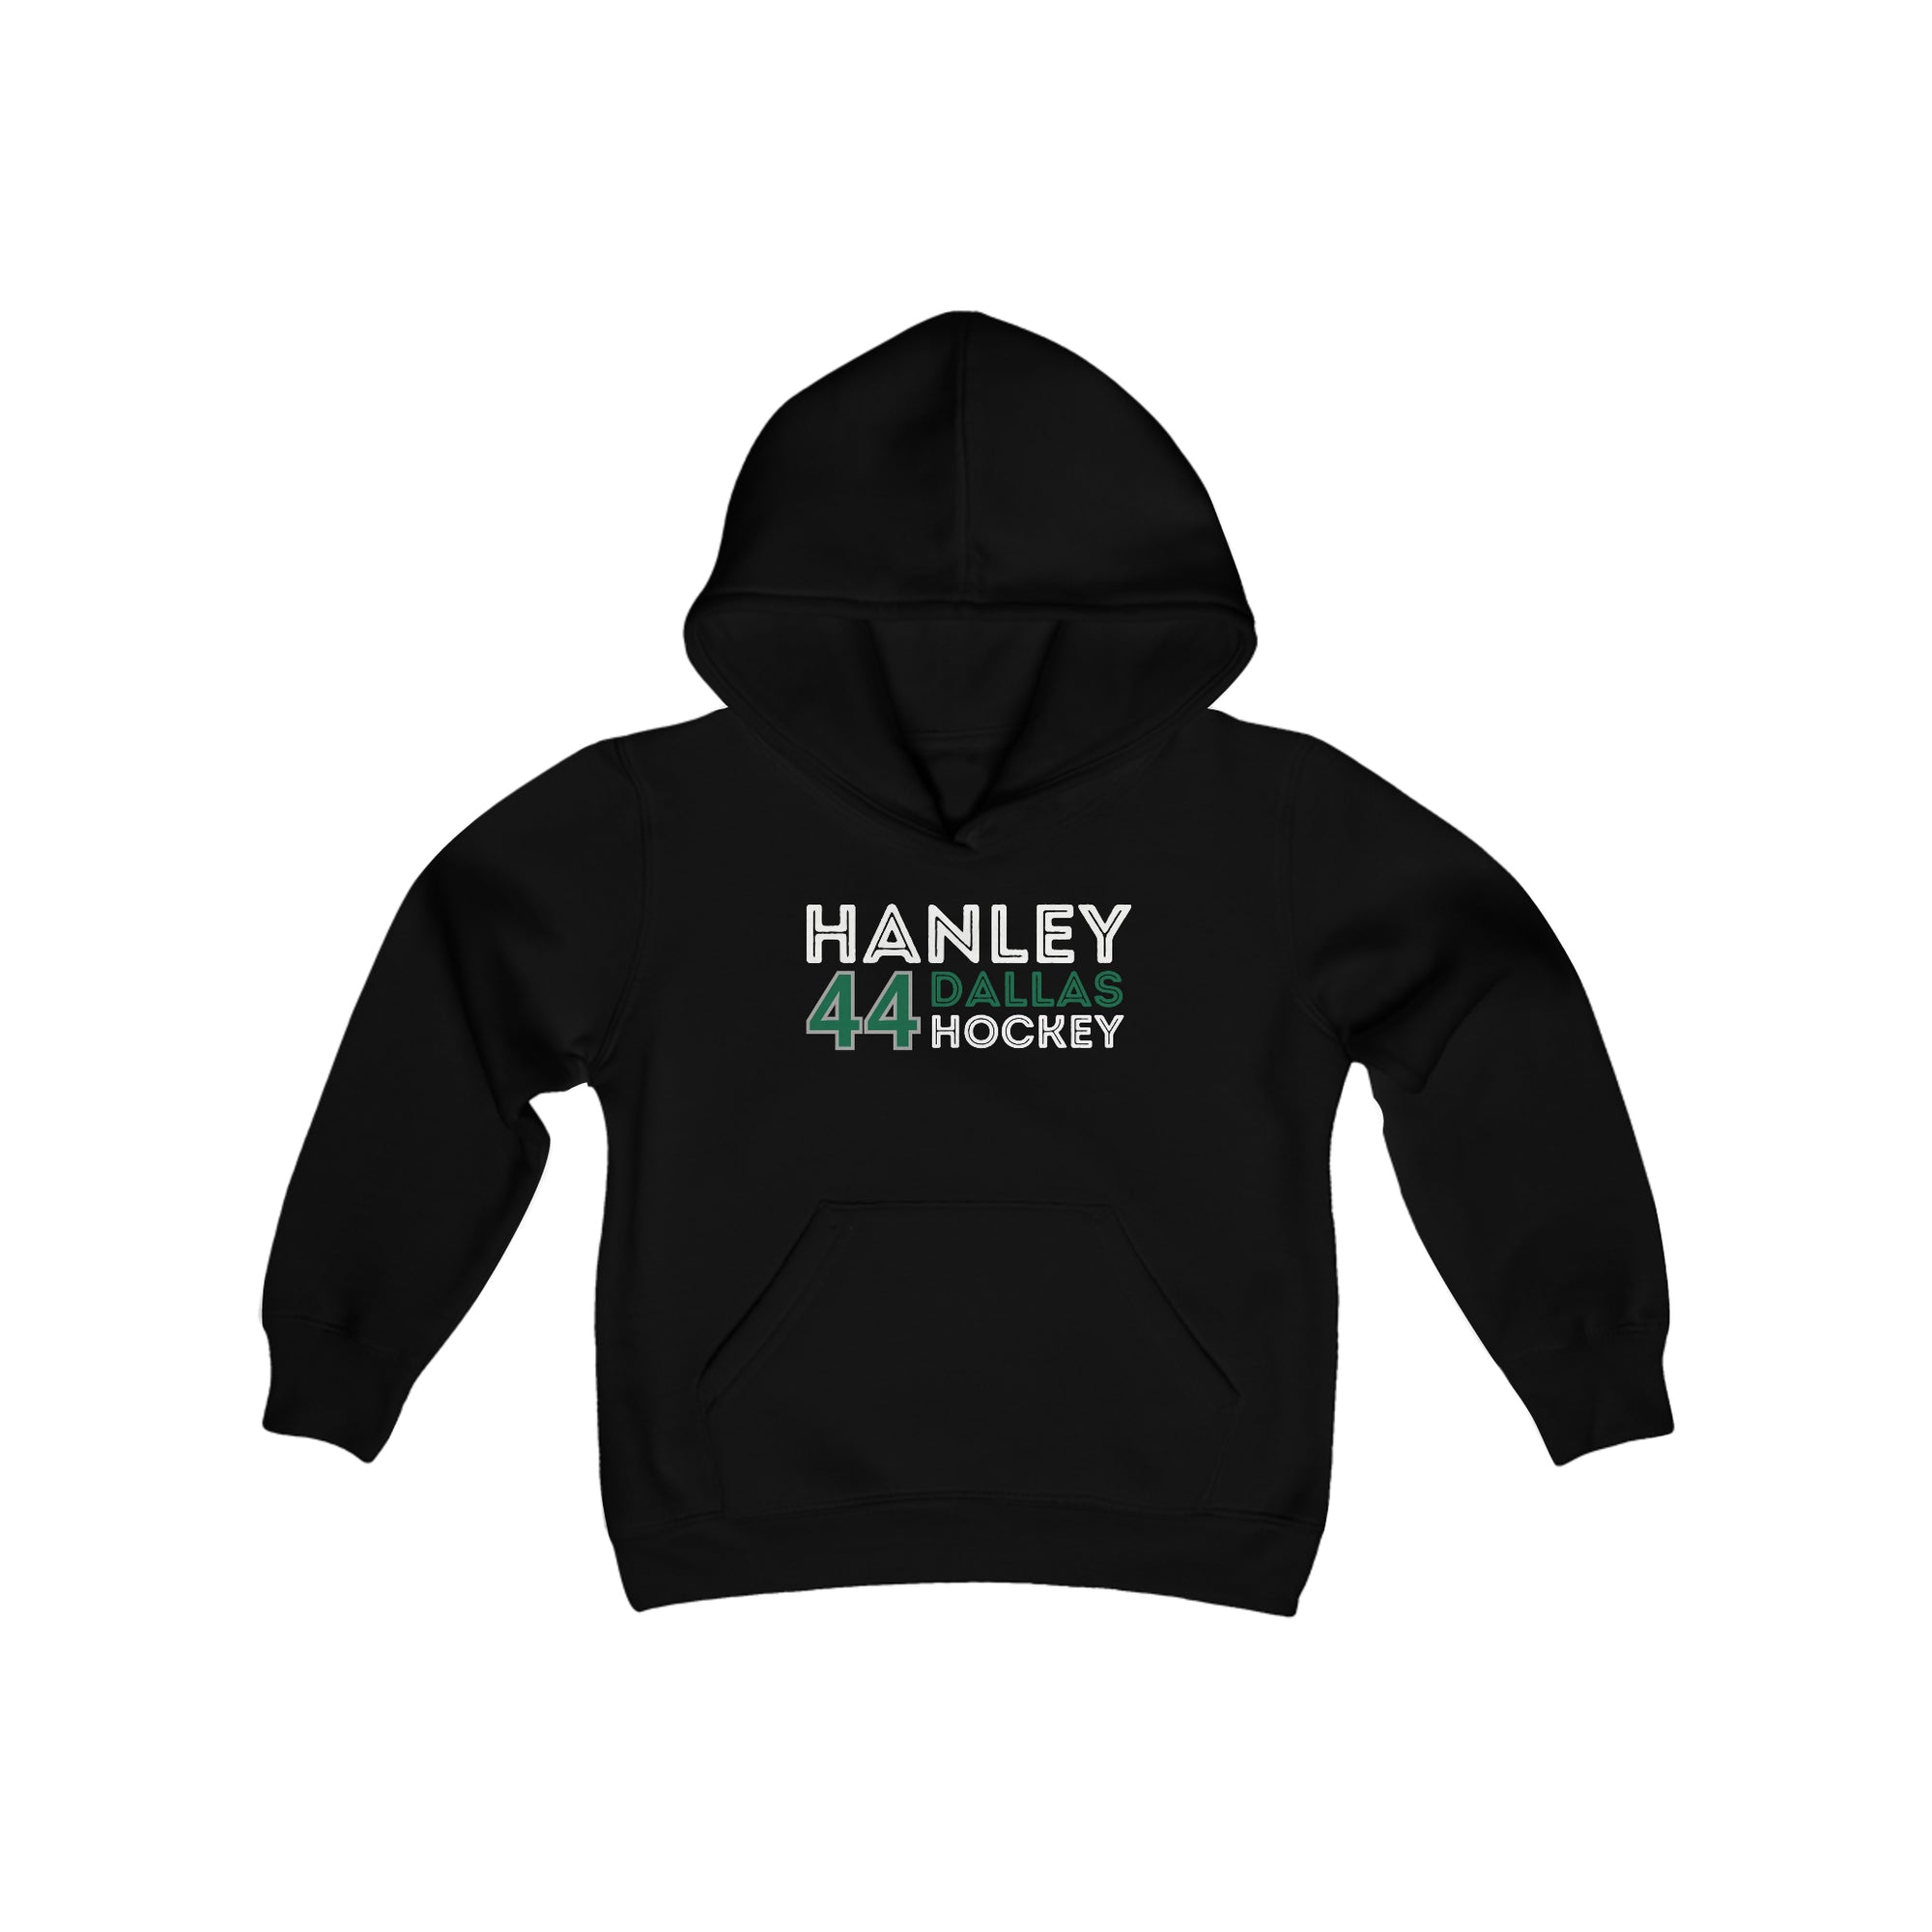 Hanley 44 Dallas Hockey Grafitti Wall Design Youth Hooded Sweatshirt